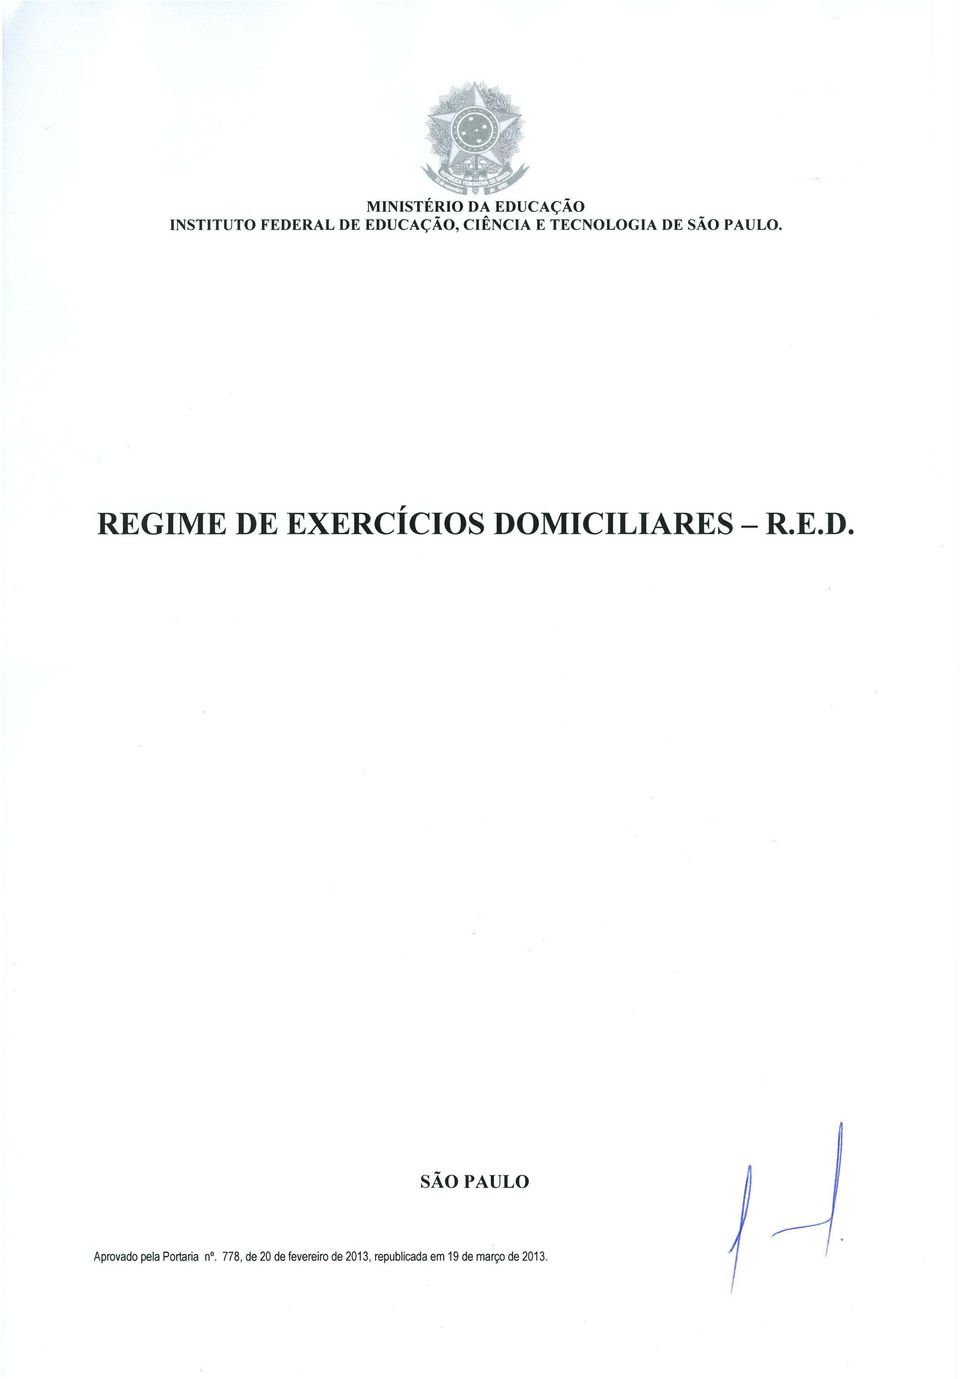 REGIME DE EXERCICIOS DOMICILIARES - R.E.D. SAO PAULO Aprovado pela Portaria n.